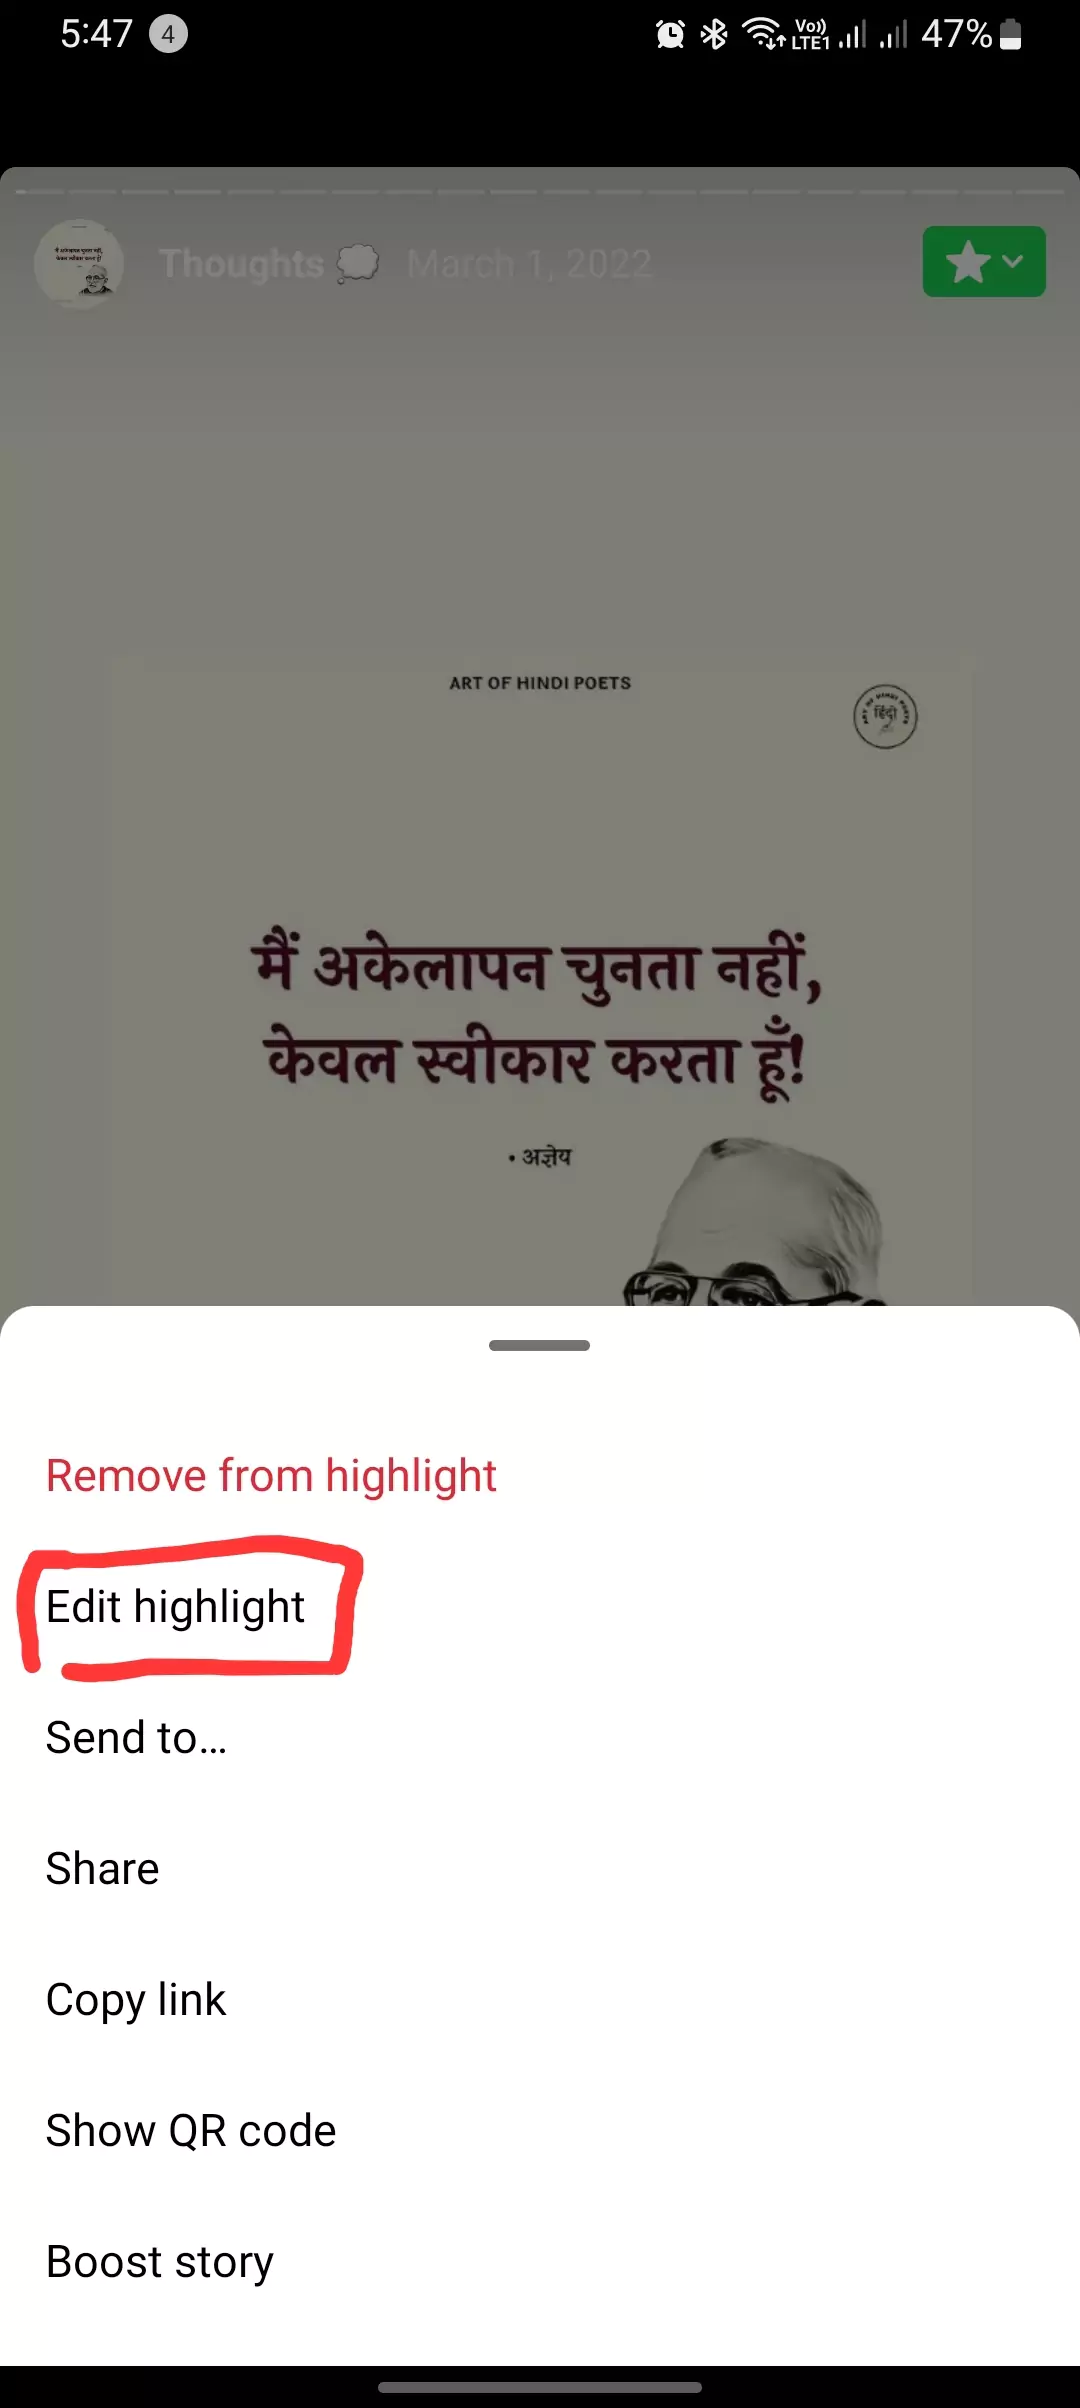 edit highlight button highlighted screenshot